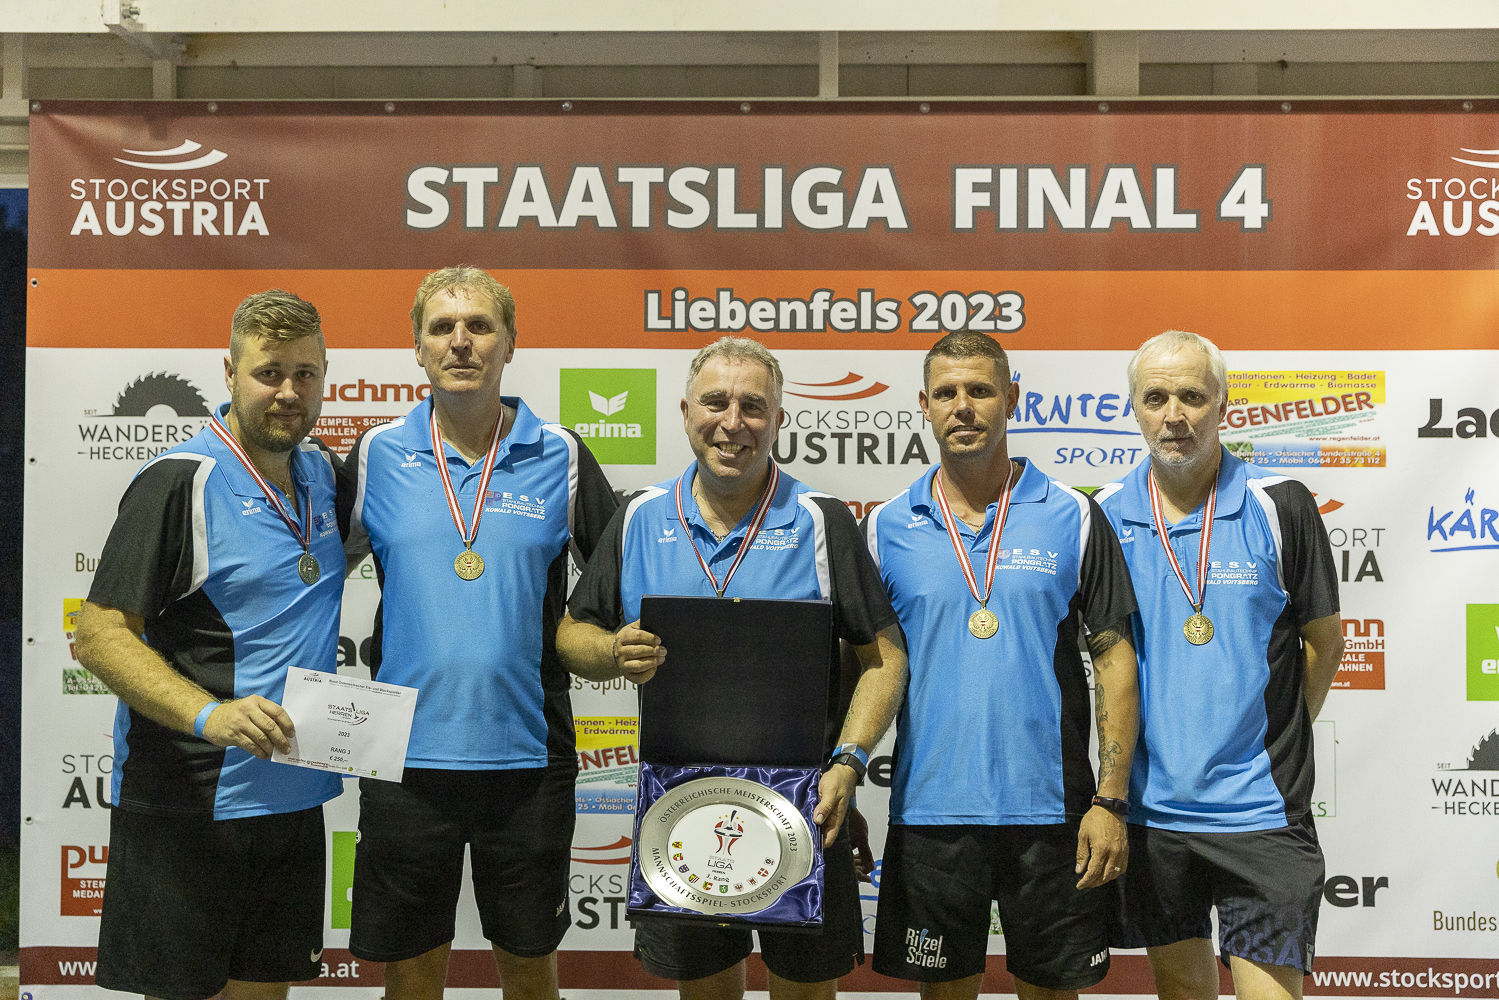 Offene Wiener Landesmeisterschaft 2023 - Vienna Open Championship 2023 -  Smoothcomp